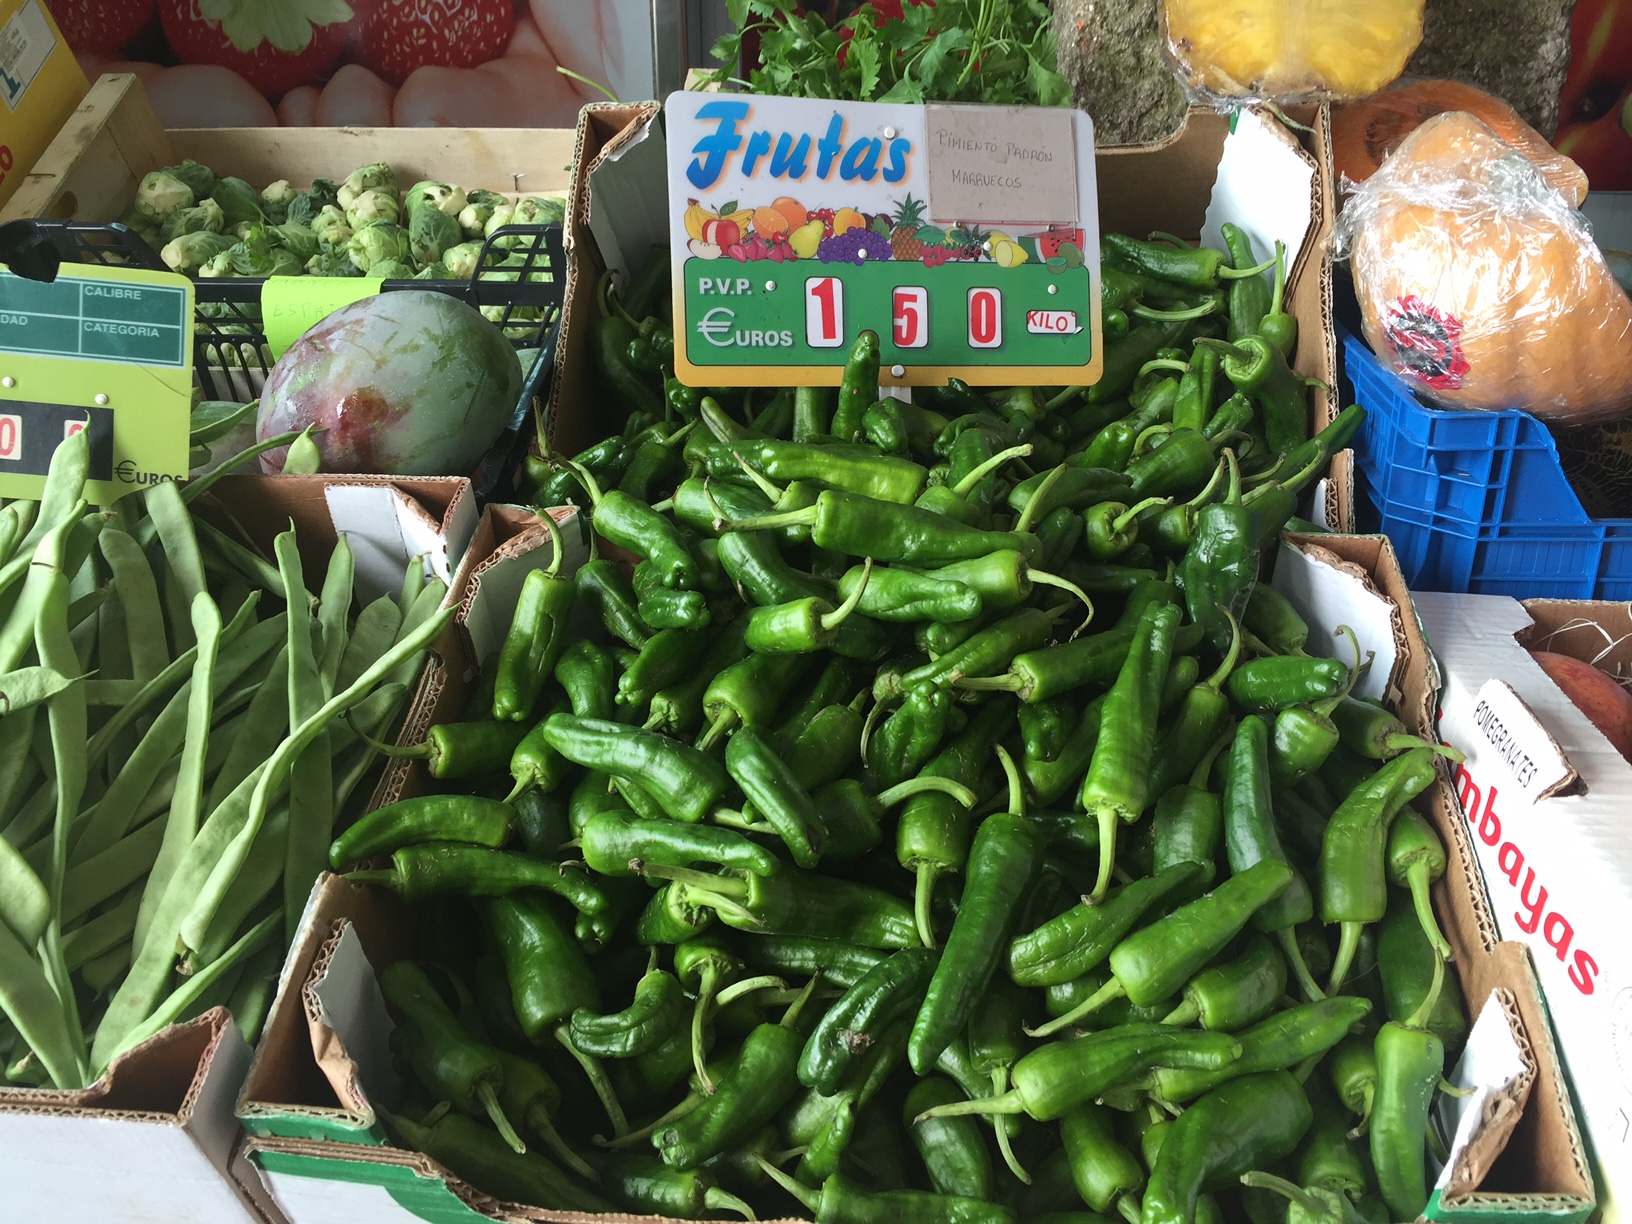 Pimentos de Padron at the Market.jpg